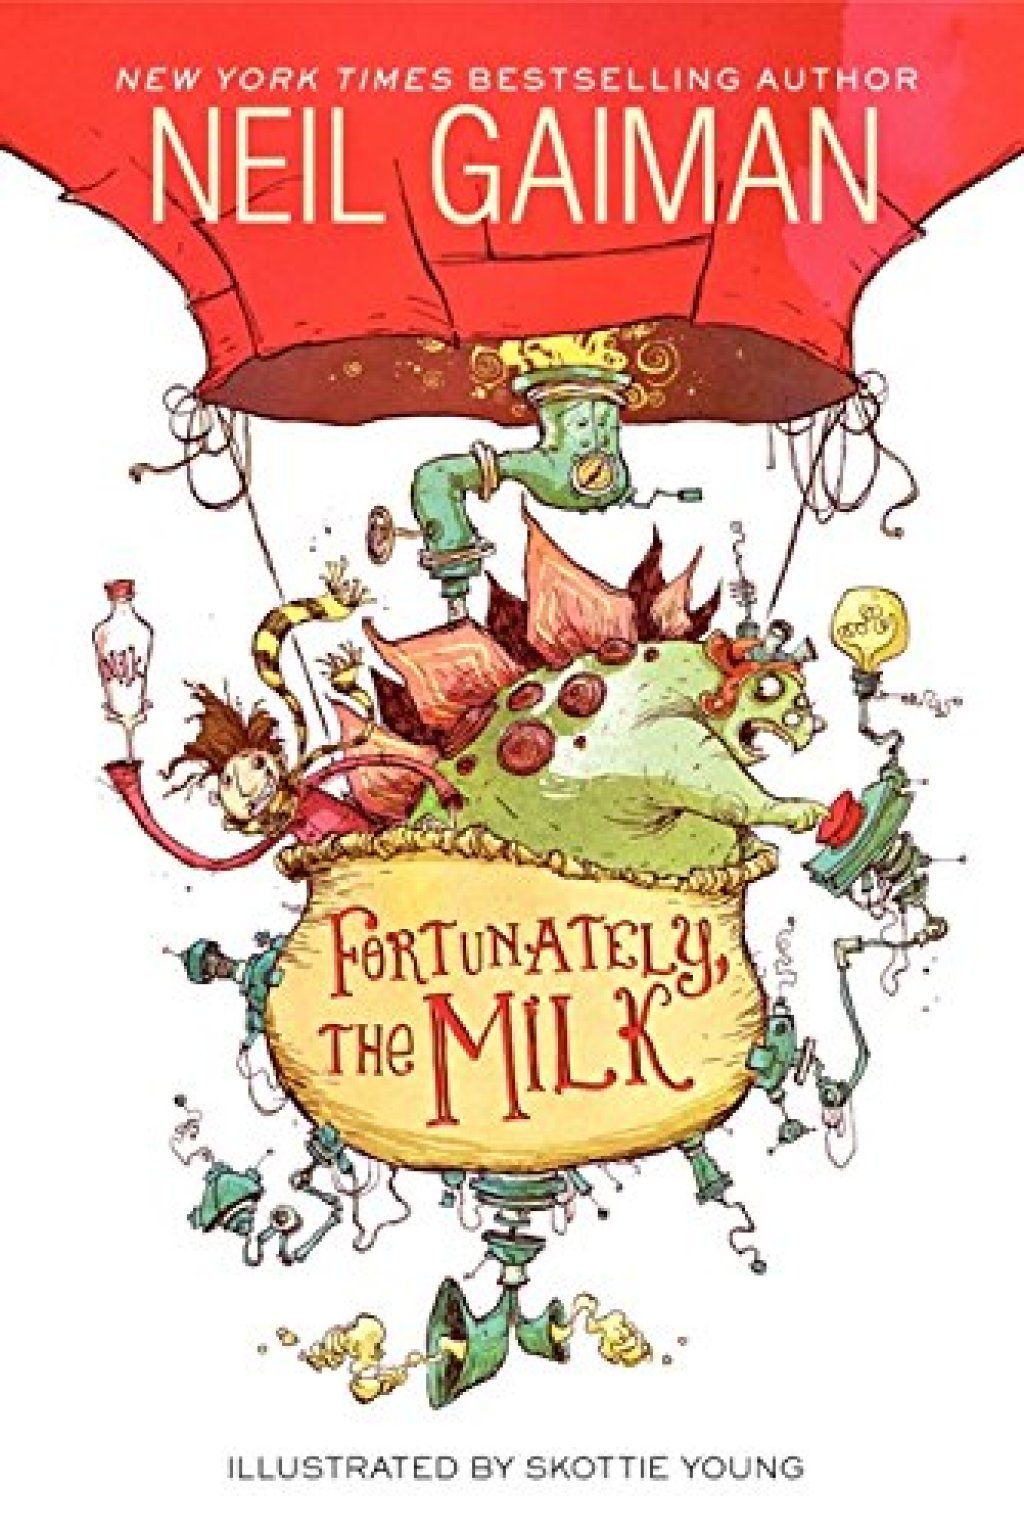 Afortunadament, el Milk Neil Gaiman fa bromes als nens